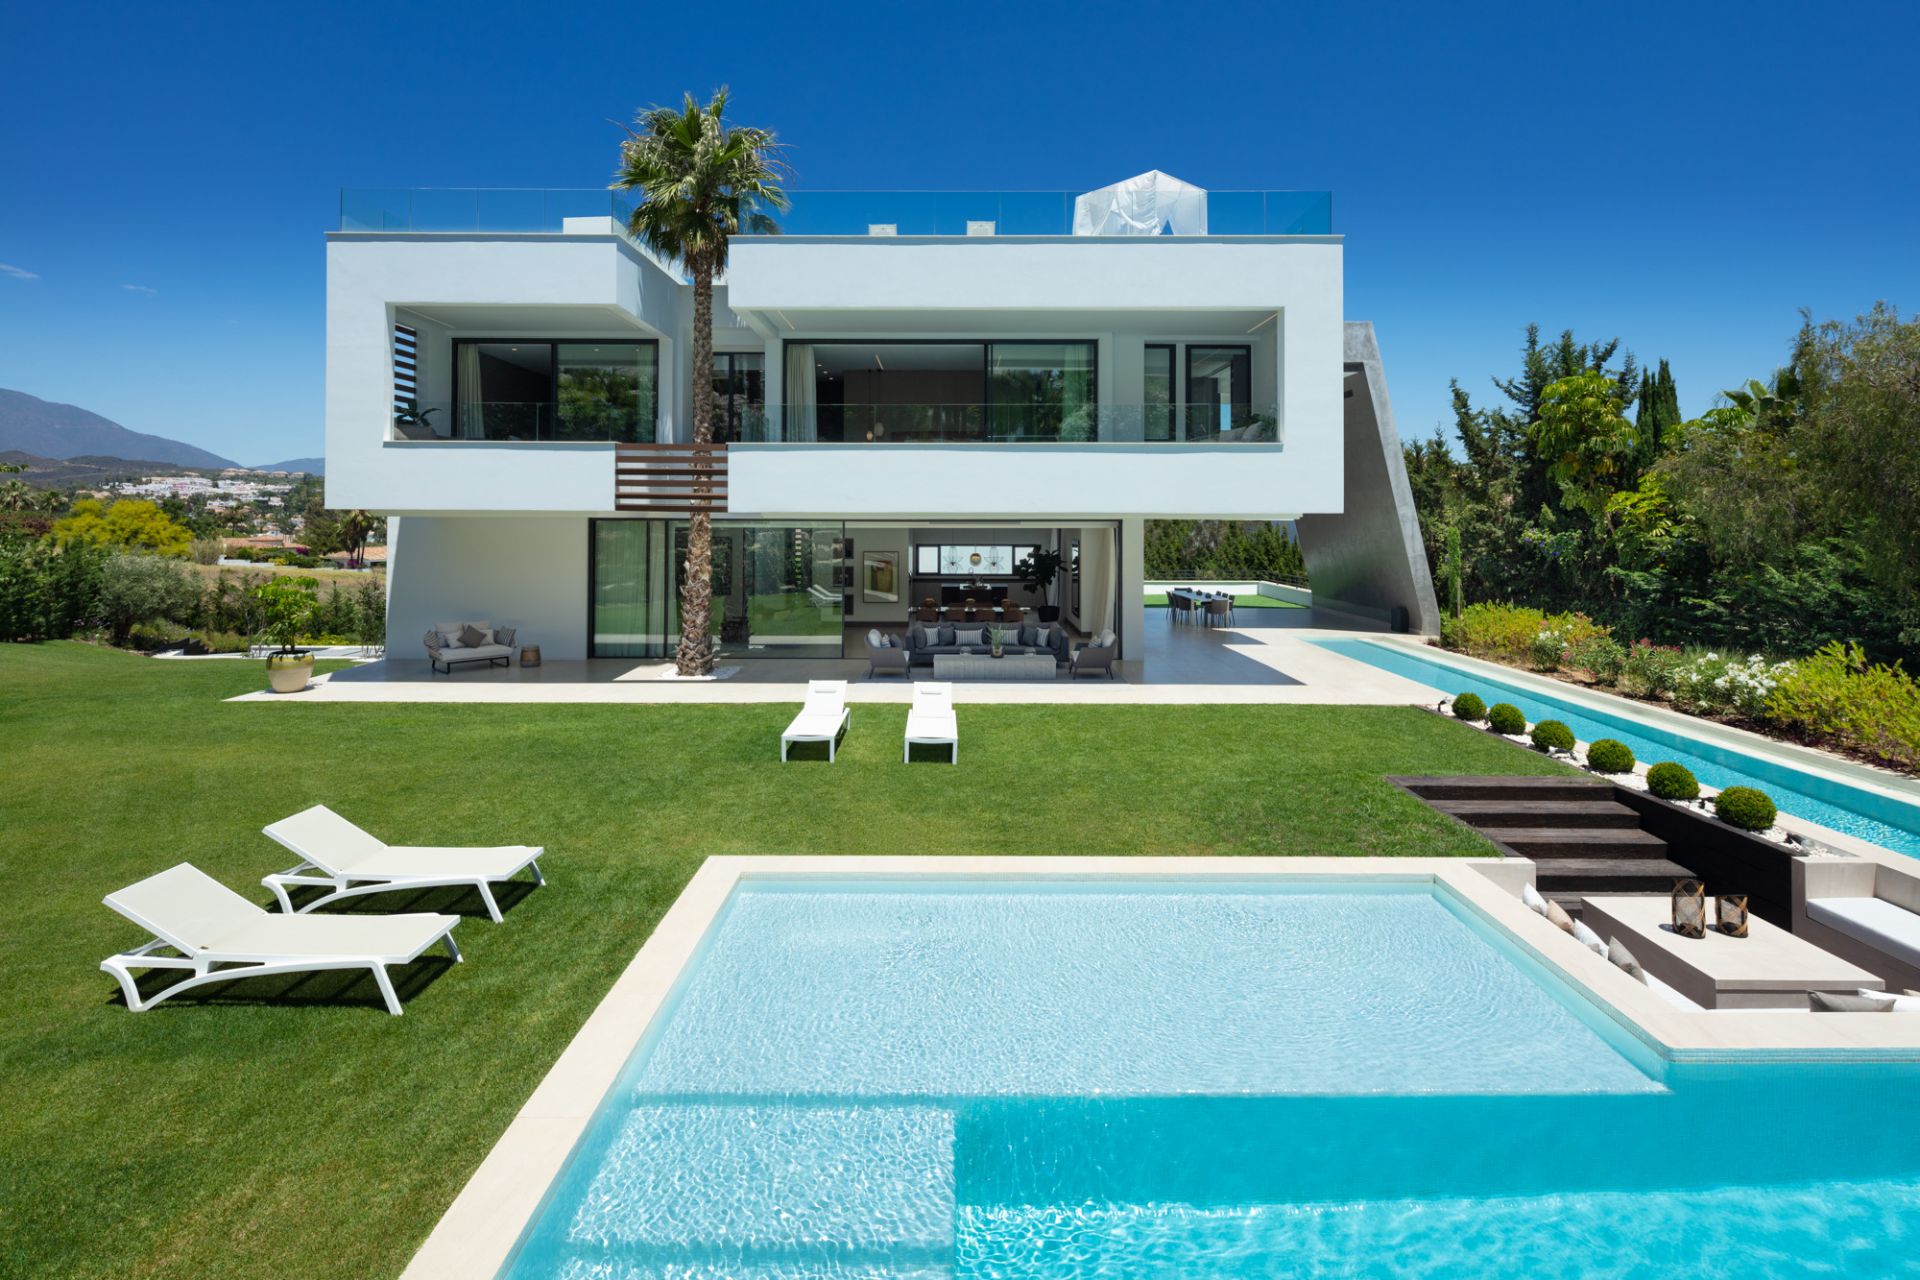 Villa Manava Marbella - Vue extérieure de la villa avec piscineanava Marbella - Vue extérieure de la villa avec piscine